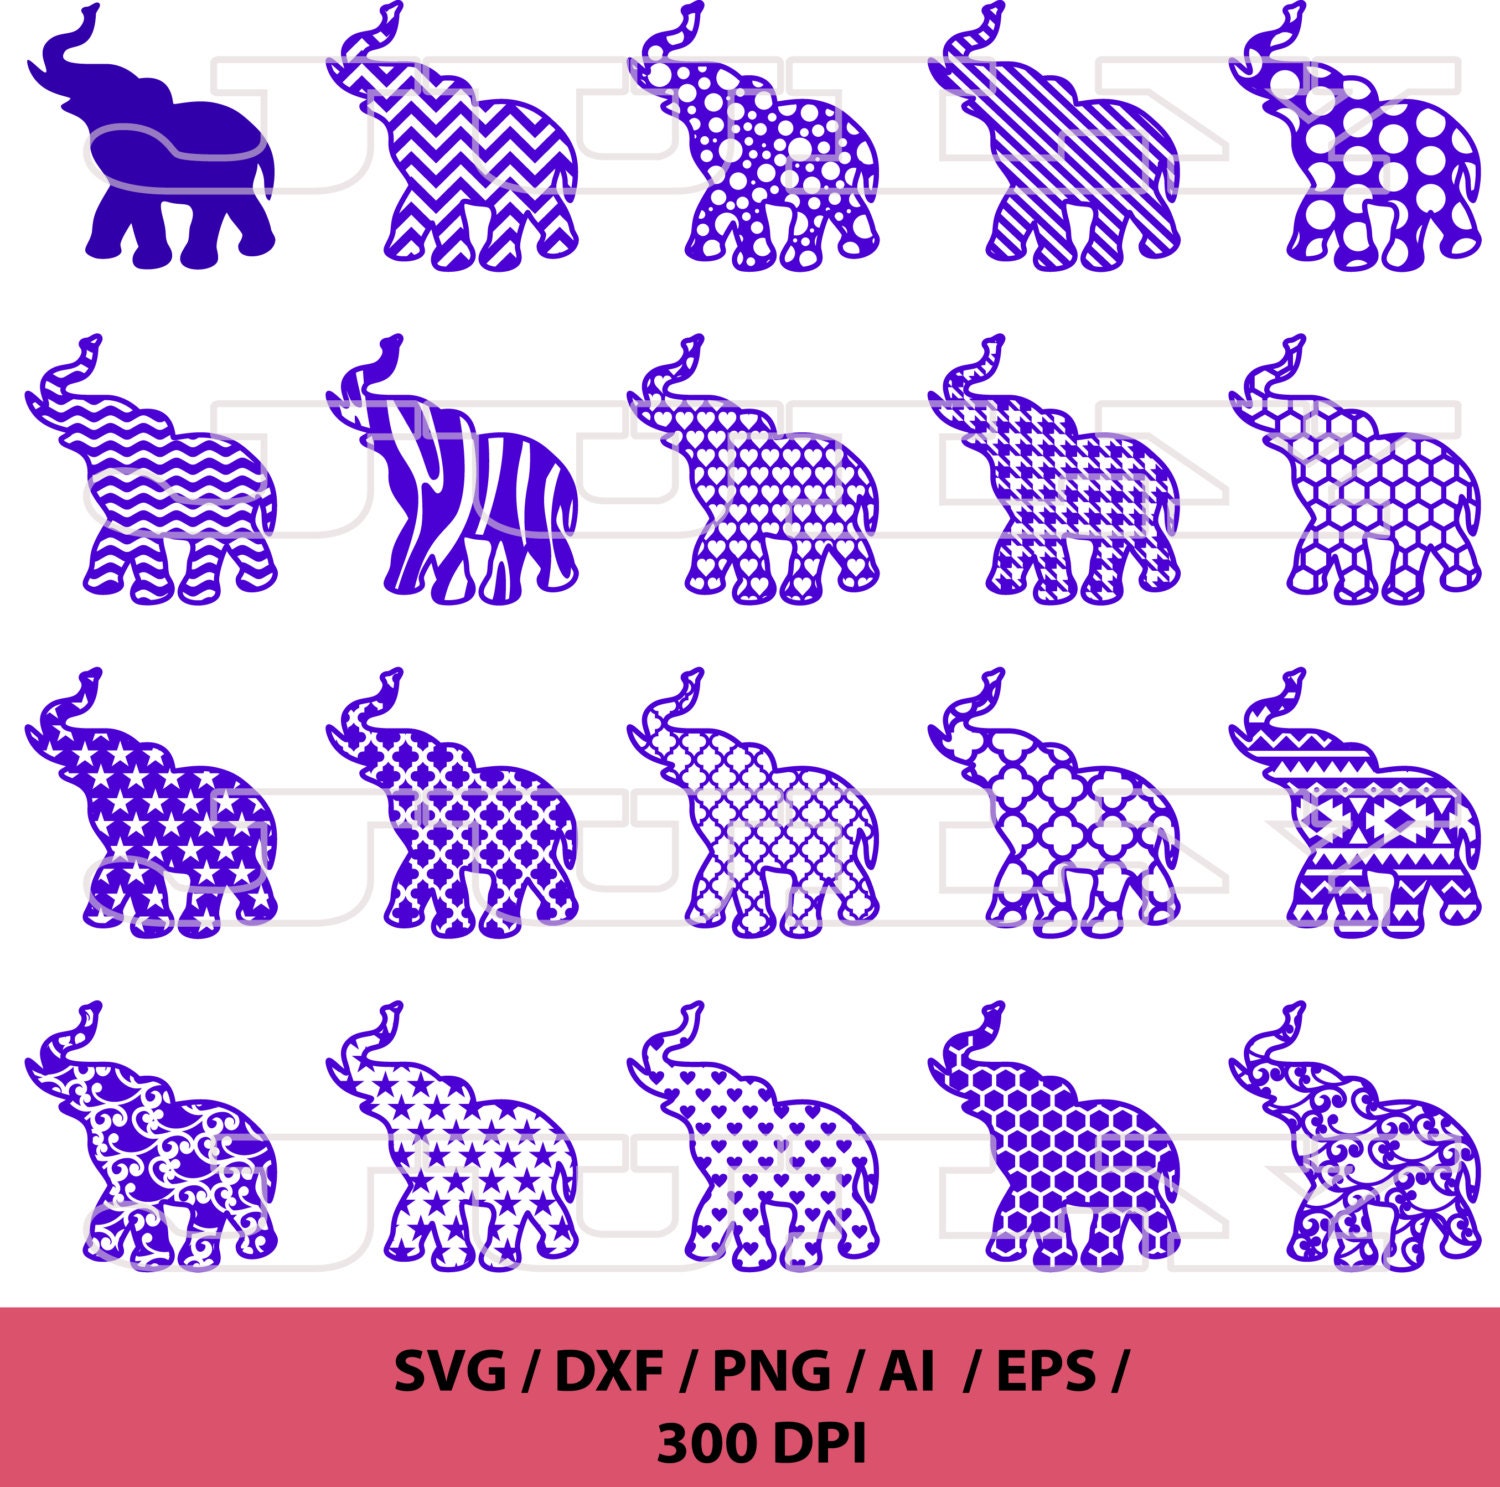 Download Elephant SVG Alabama SVG Elephant Pattern svg png eps